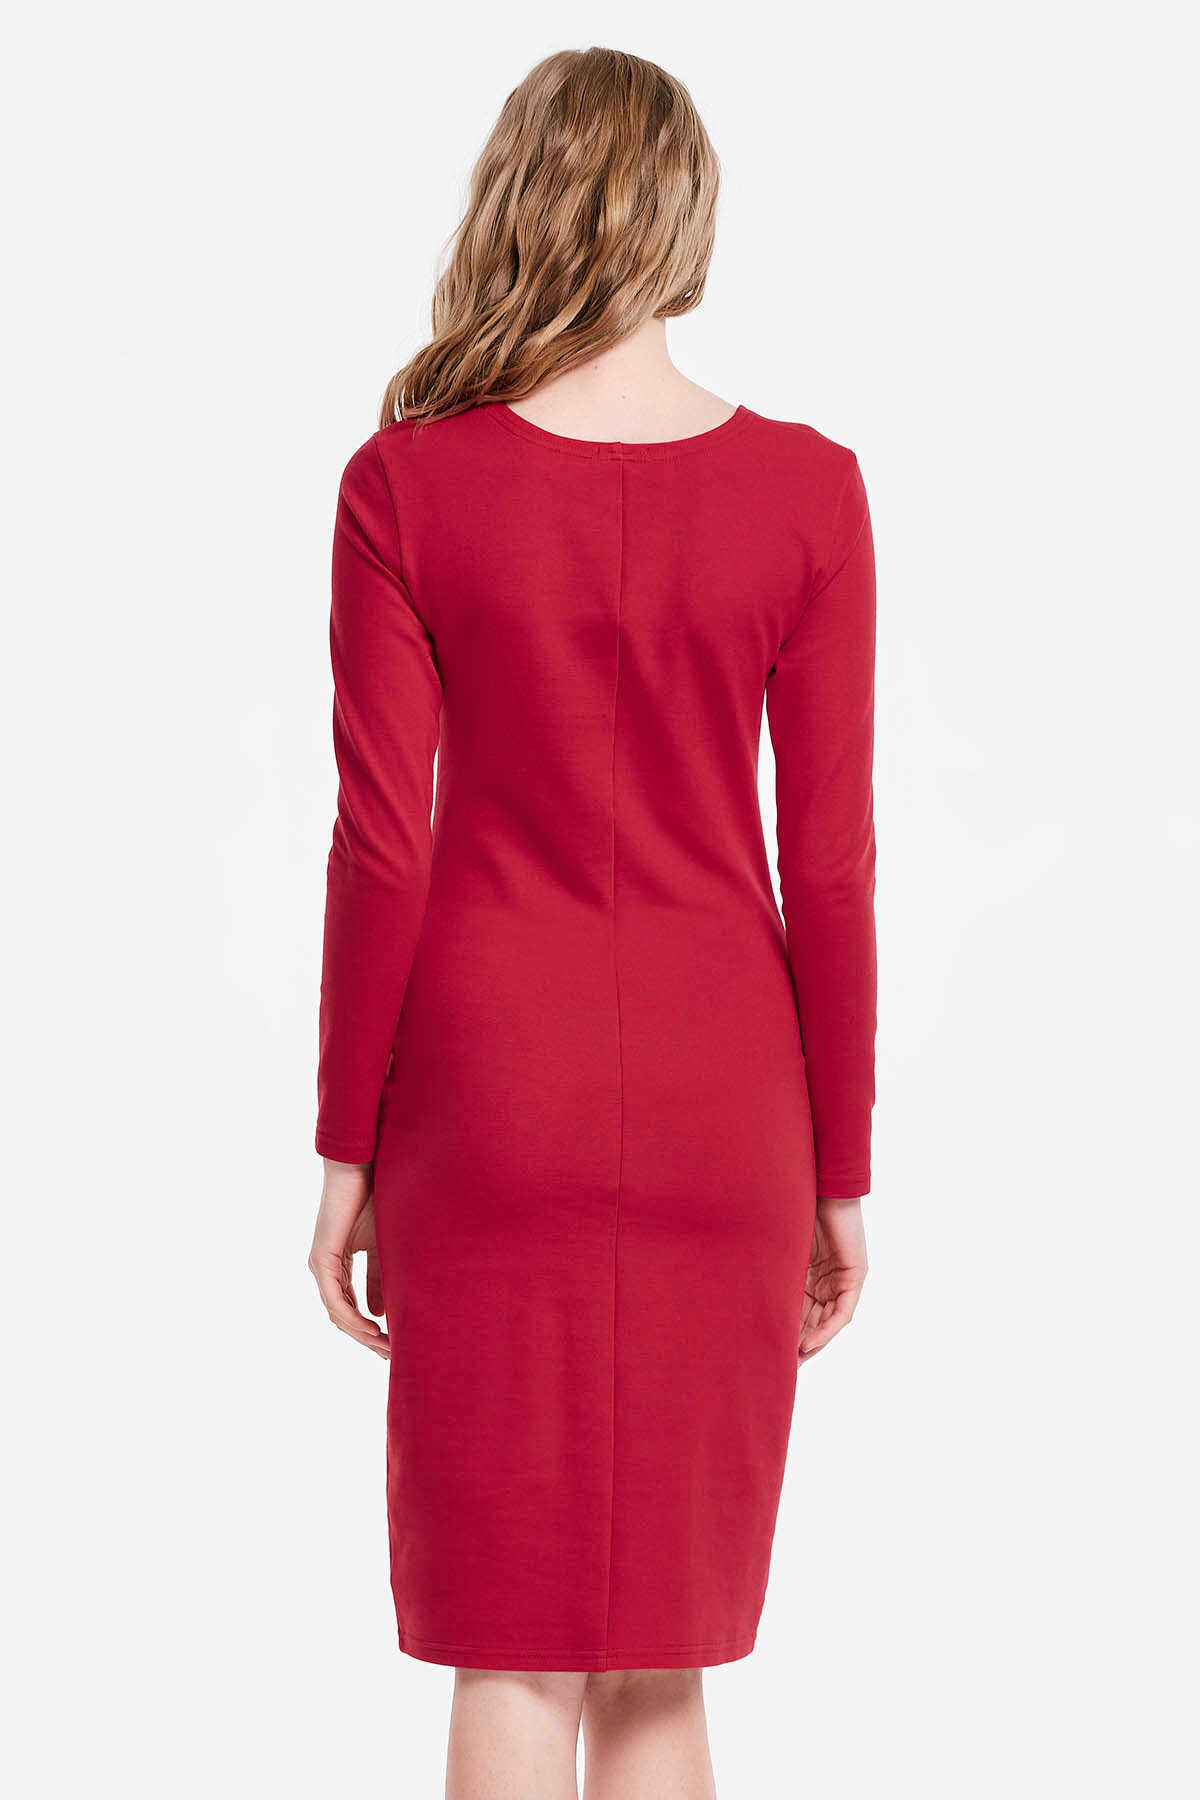 Червона сукня-футляр, фото 2